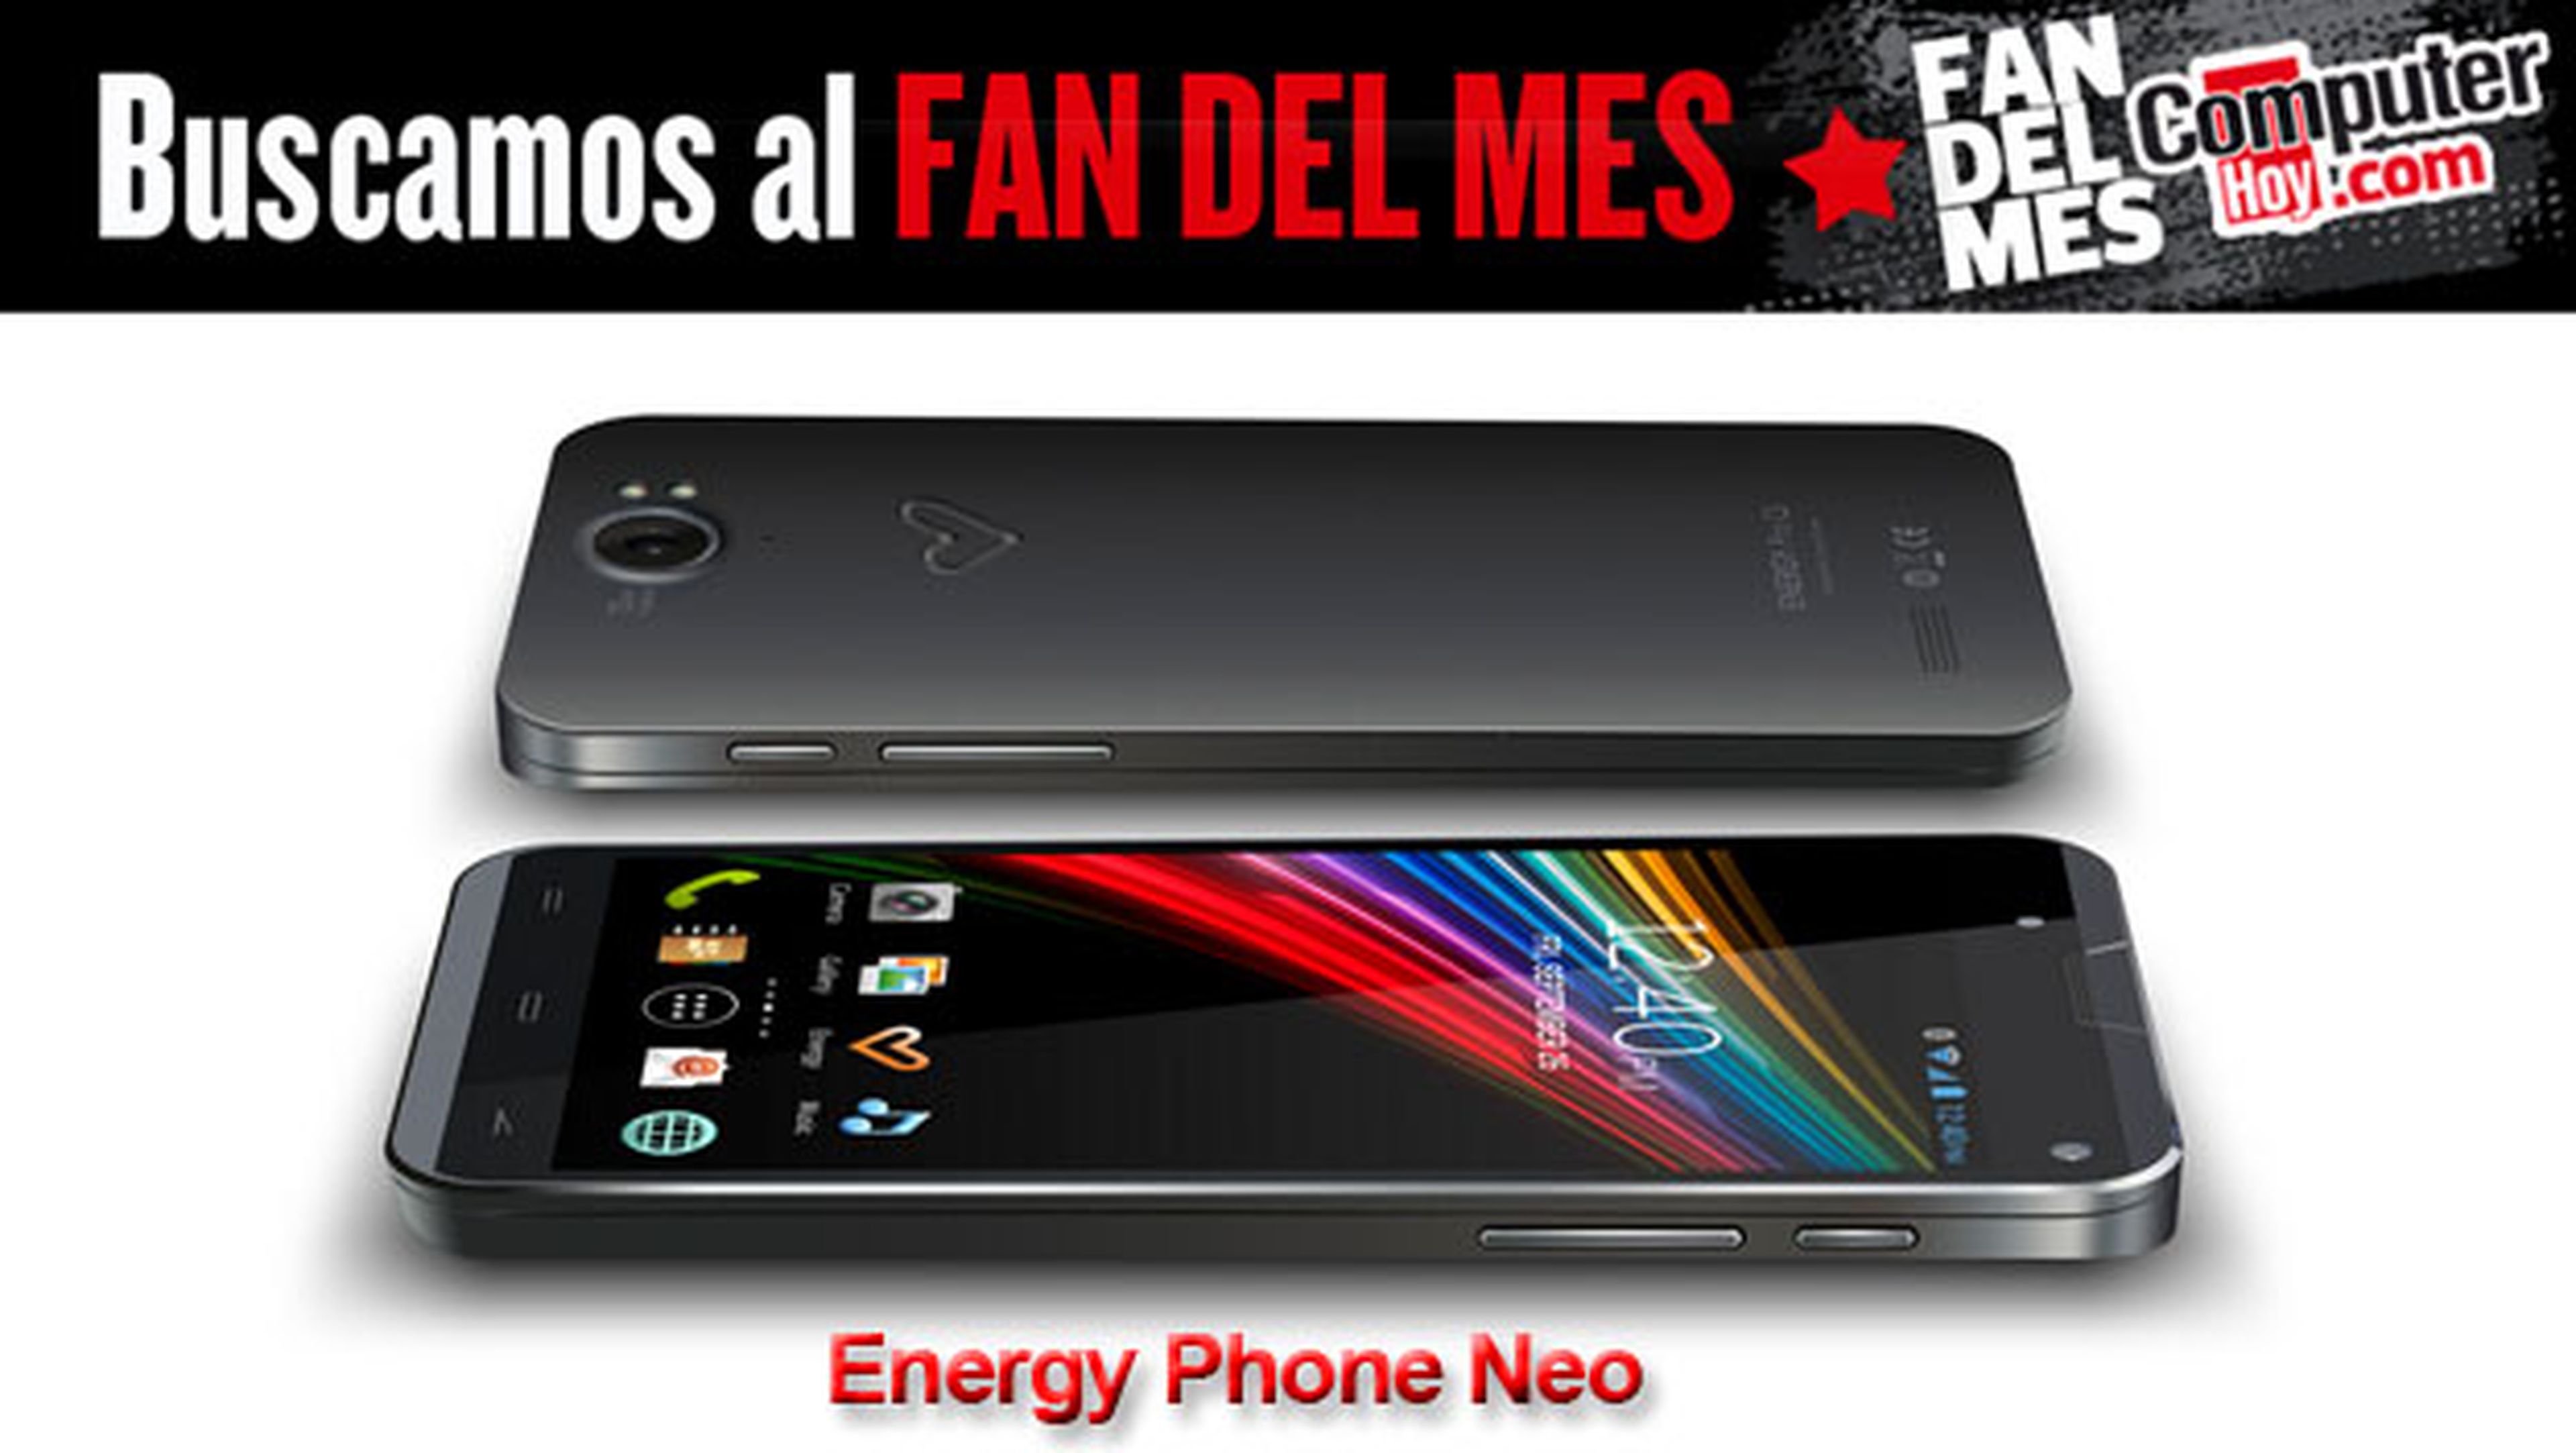 Energy Phone Neo